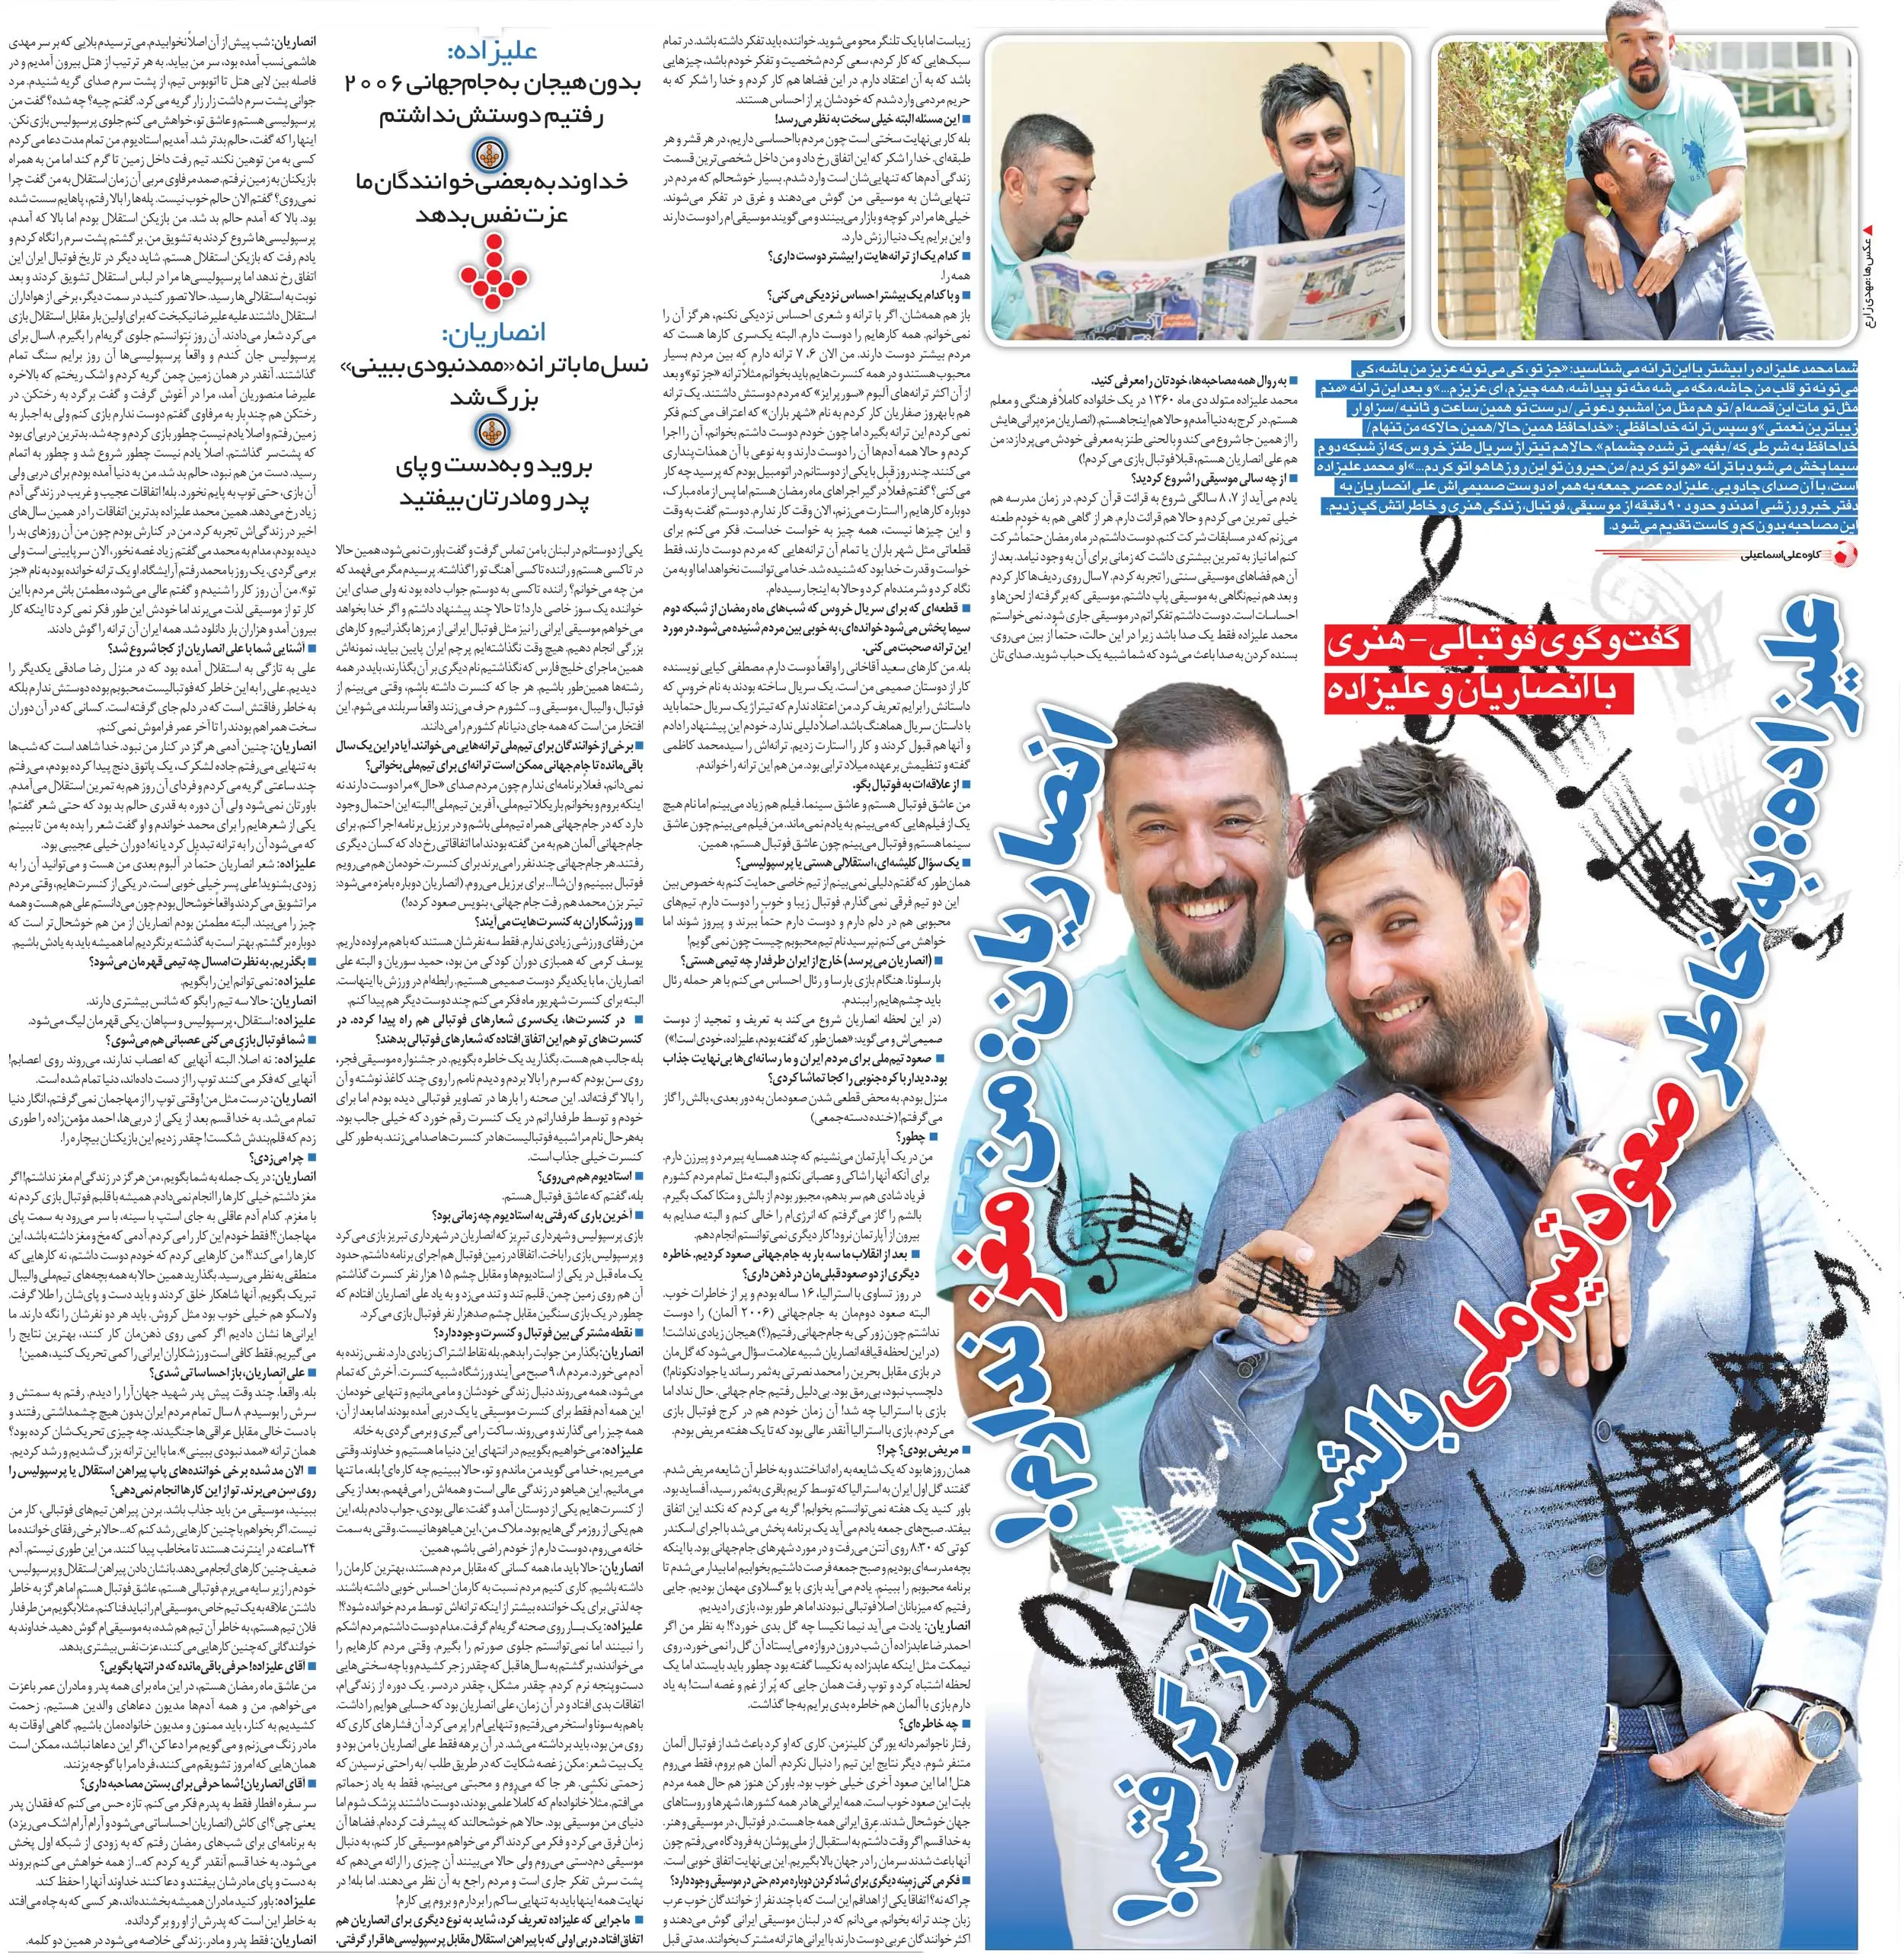 مصاحبه محمد علیزاده و علی انصاریان در خبرورزشی